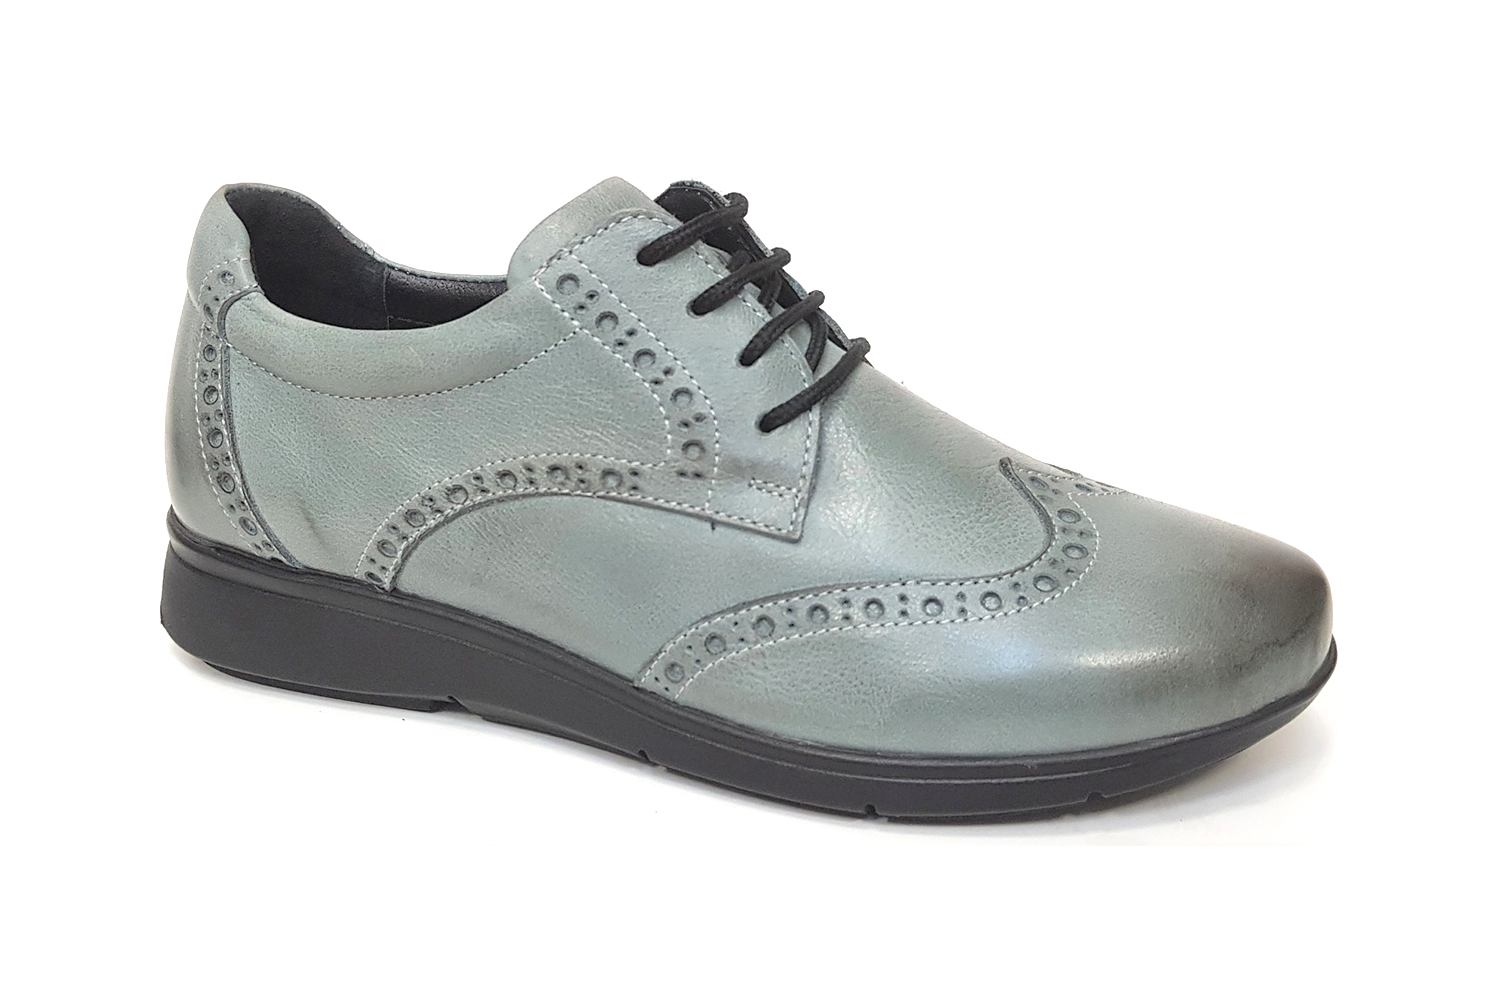 zegun shoes Comfort ayakkabı modelleri